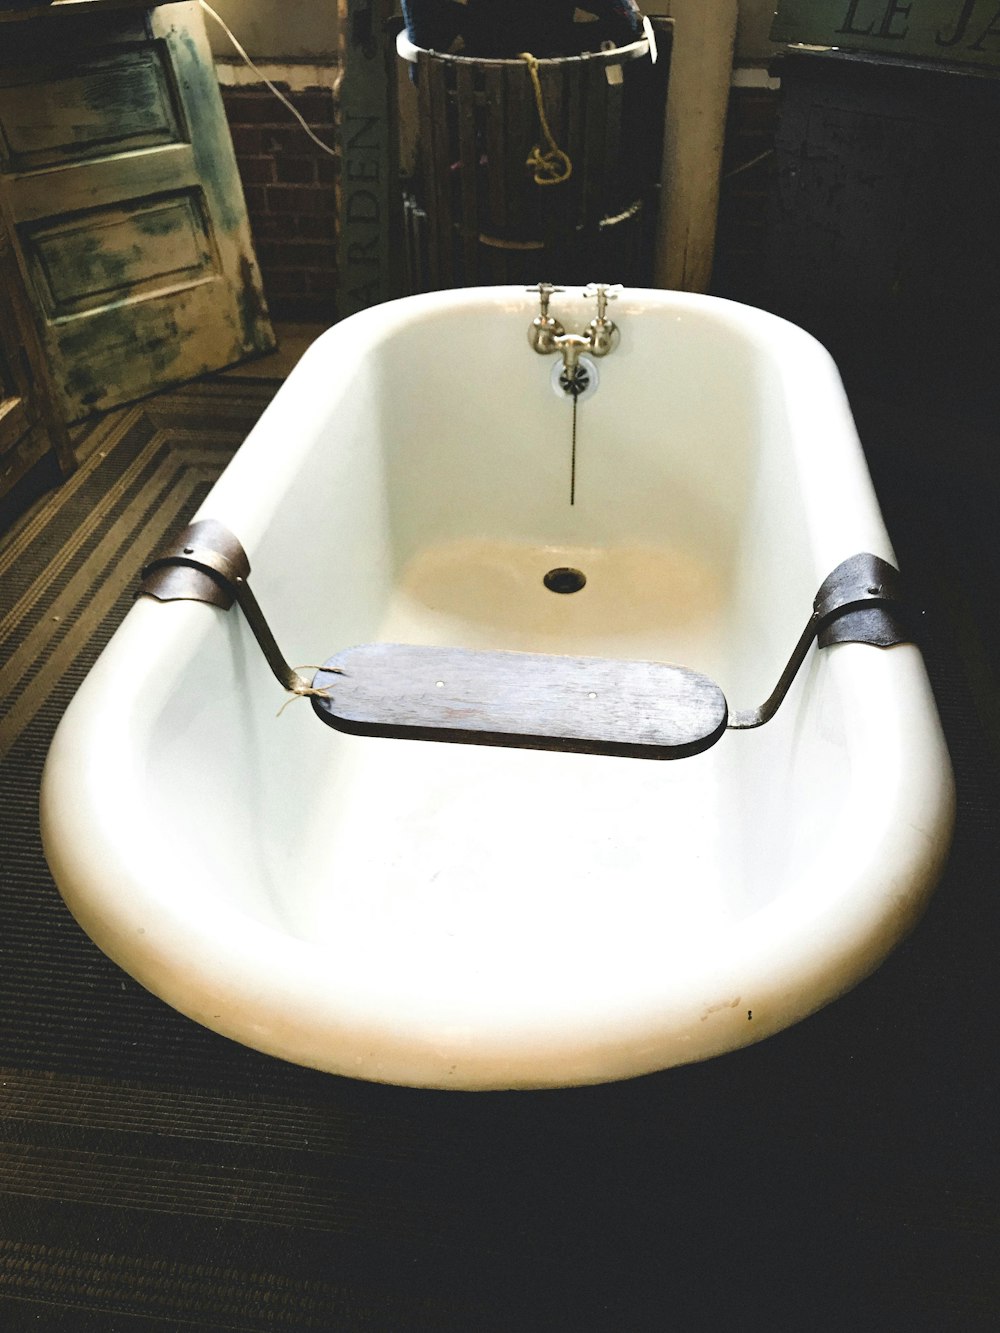 empty white ceramic bathtub